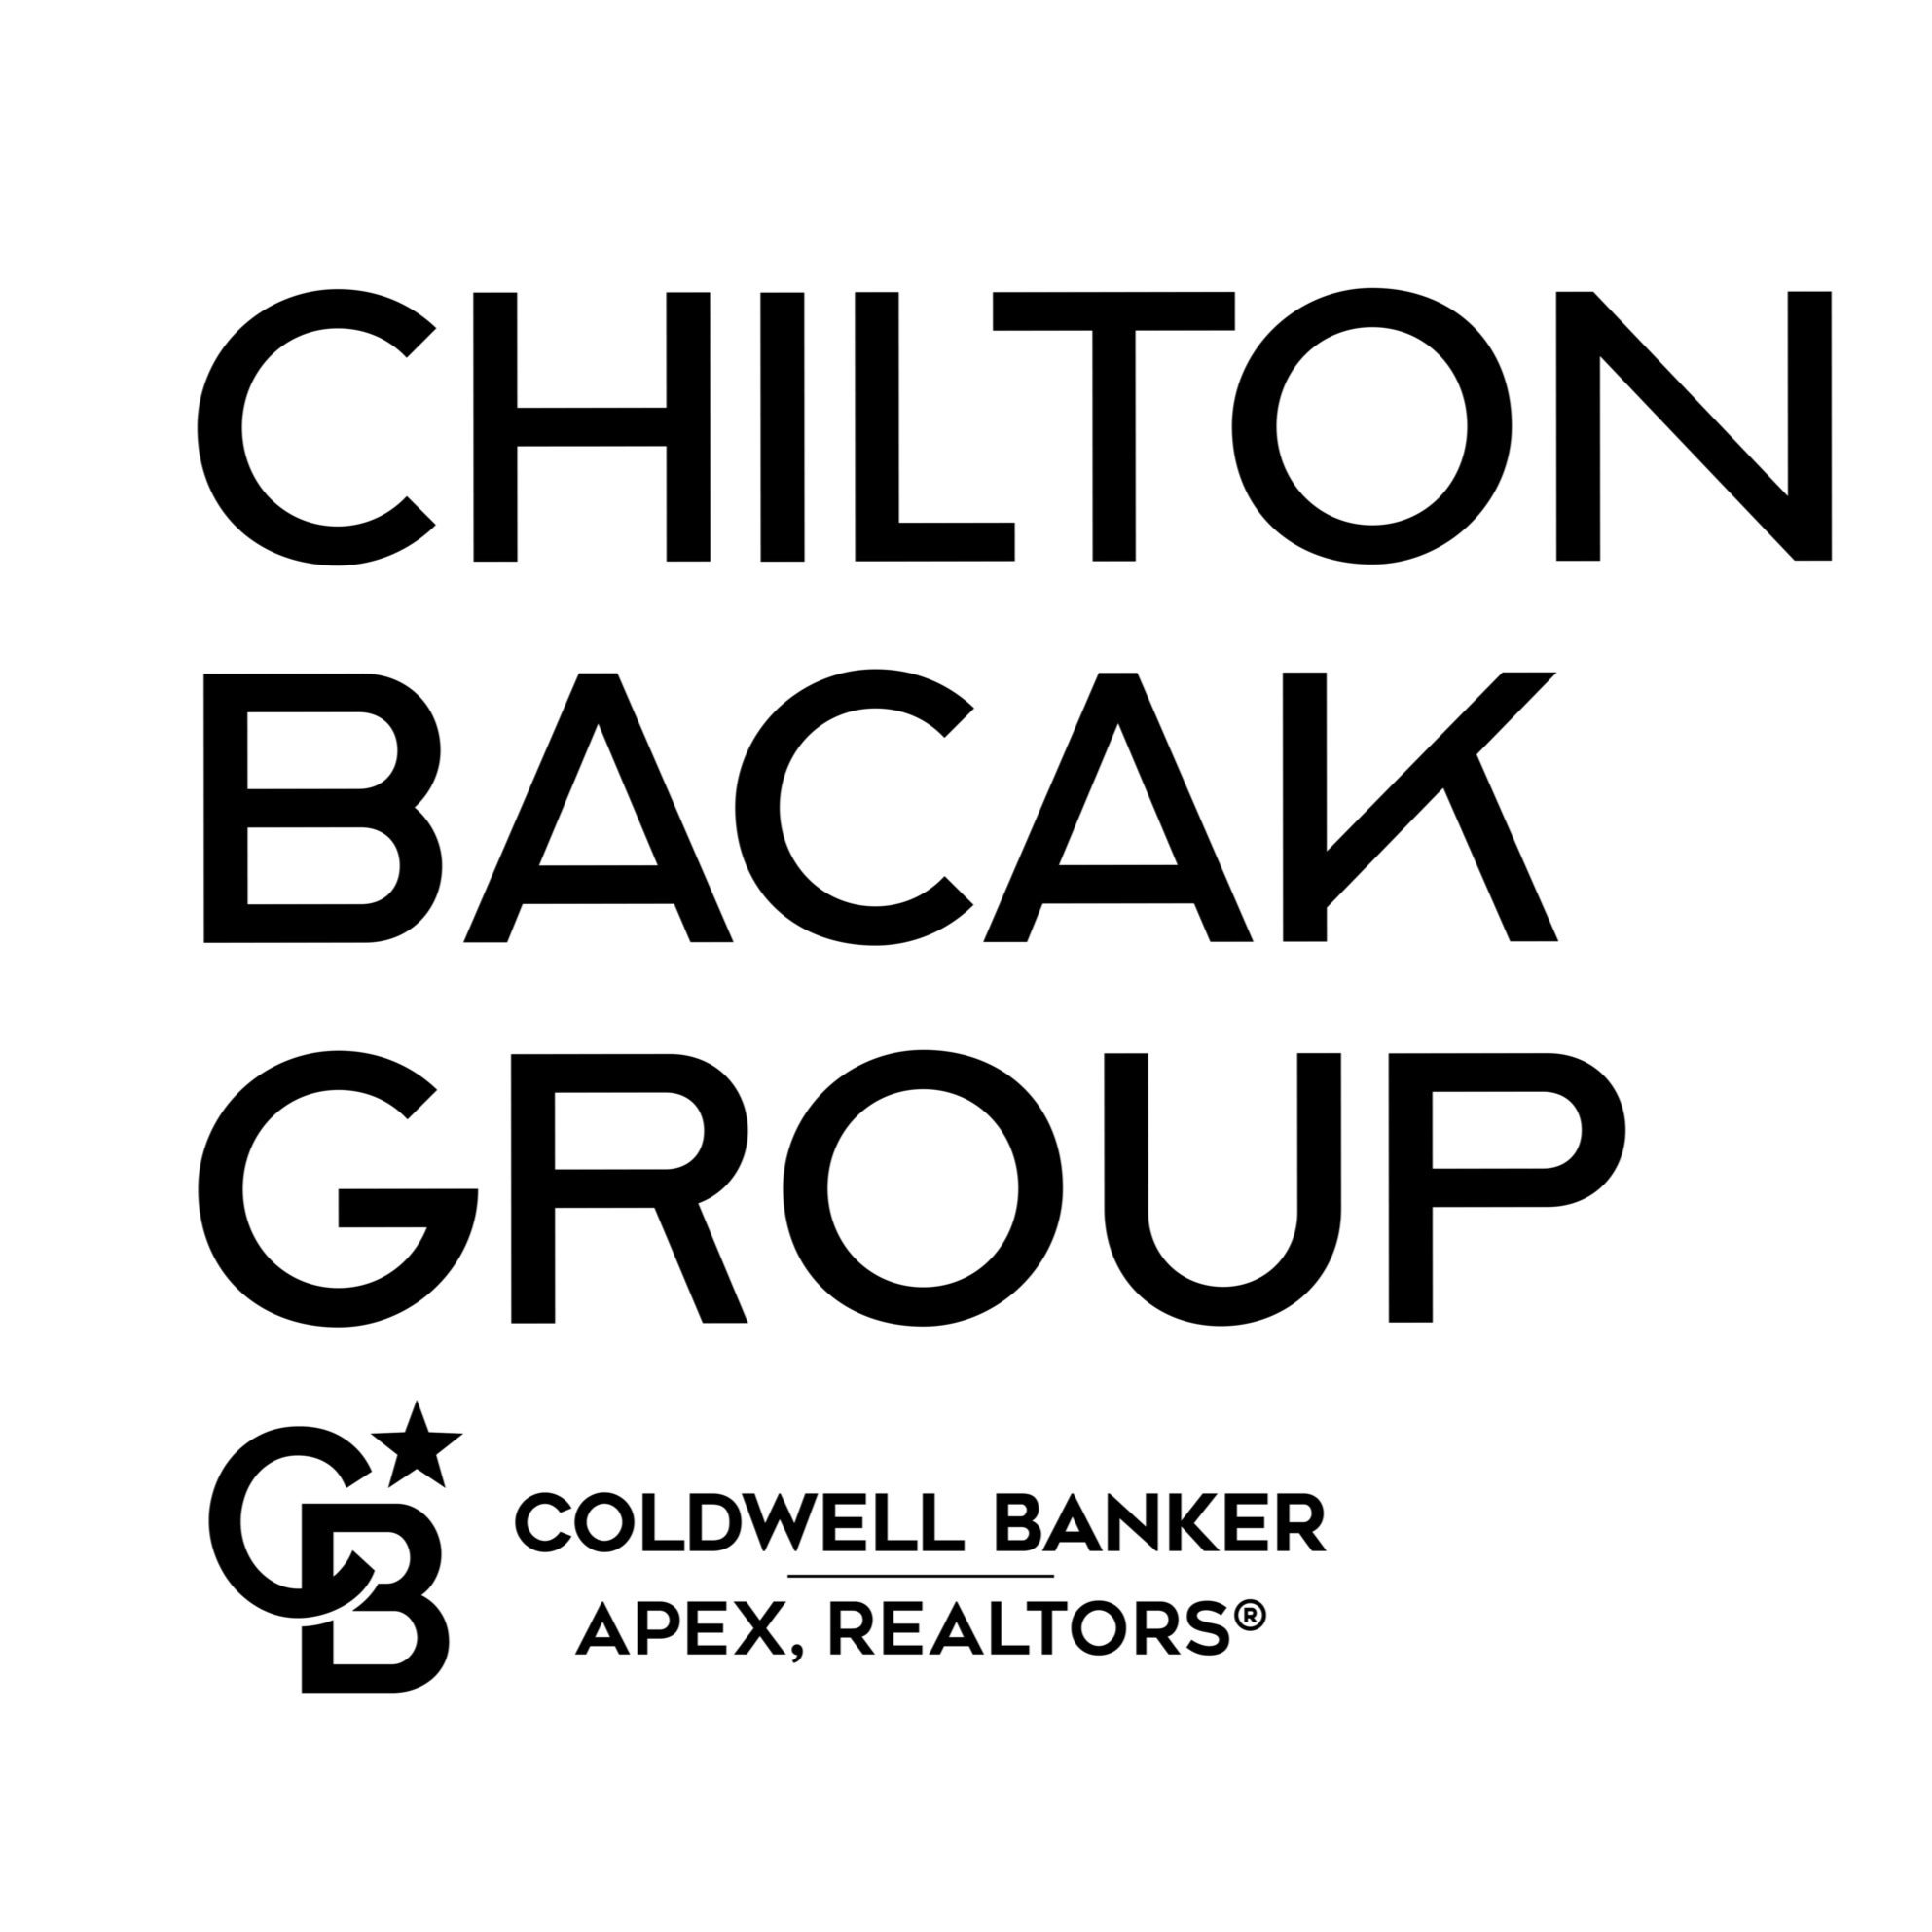 Chilton Bacak Group